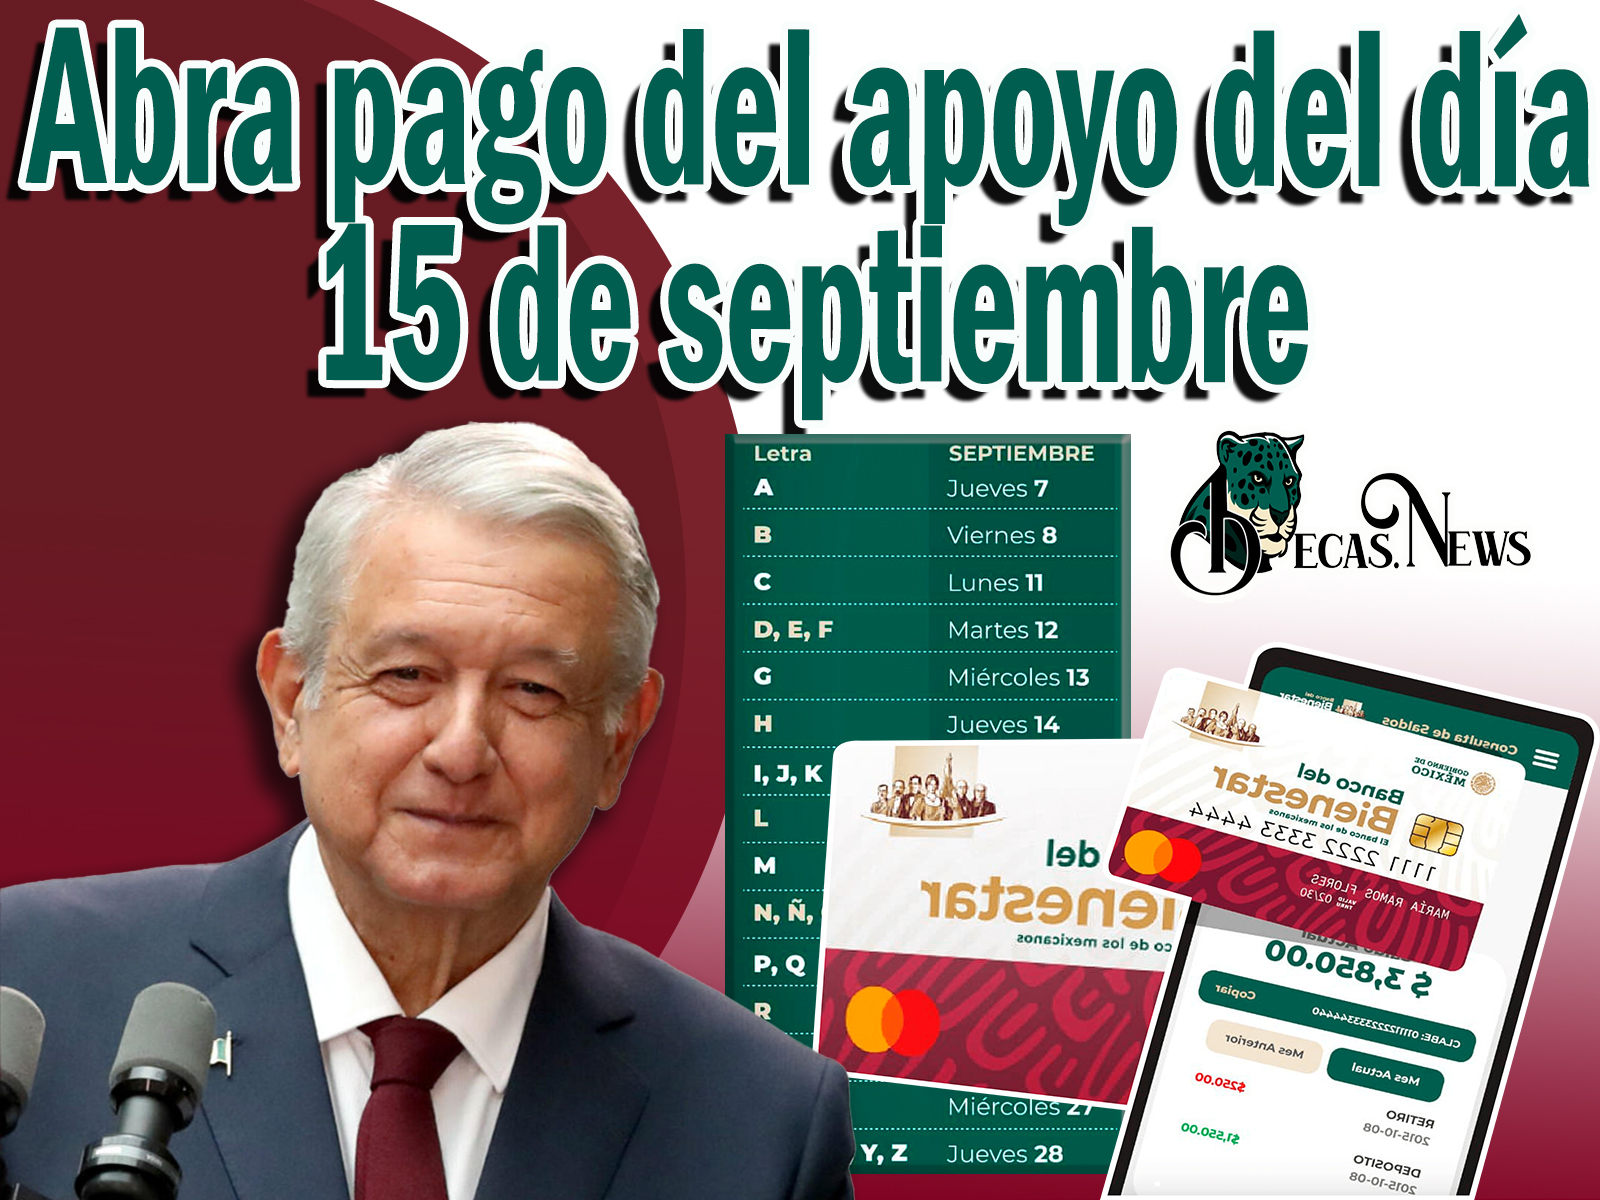 Pensión Bienestar: Abra pago del apoyo del día 15 de septiembre